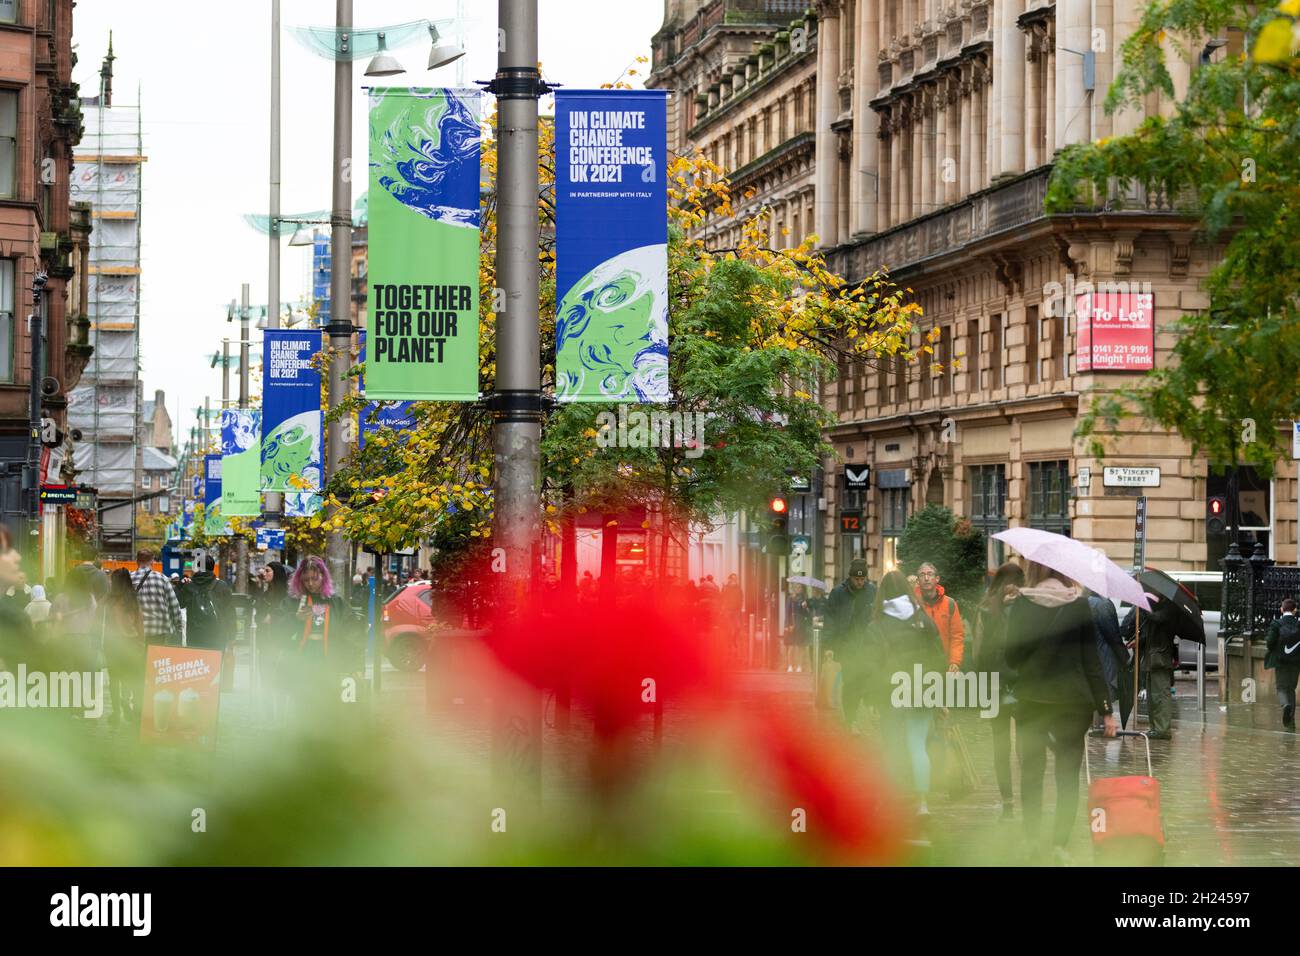 Bannières de la COP26 pour la Conférence des Nations Unies sur les changements climatiques, Glasgow, Écosse, Royaume-Uni Banque D'Images